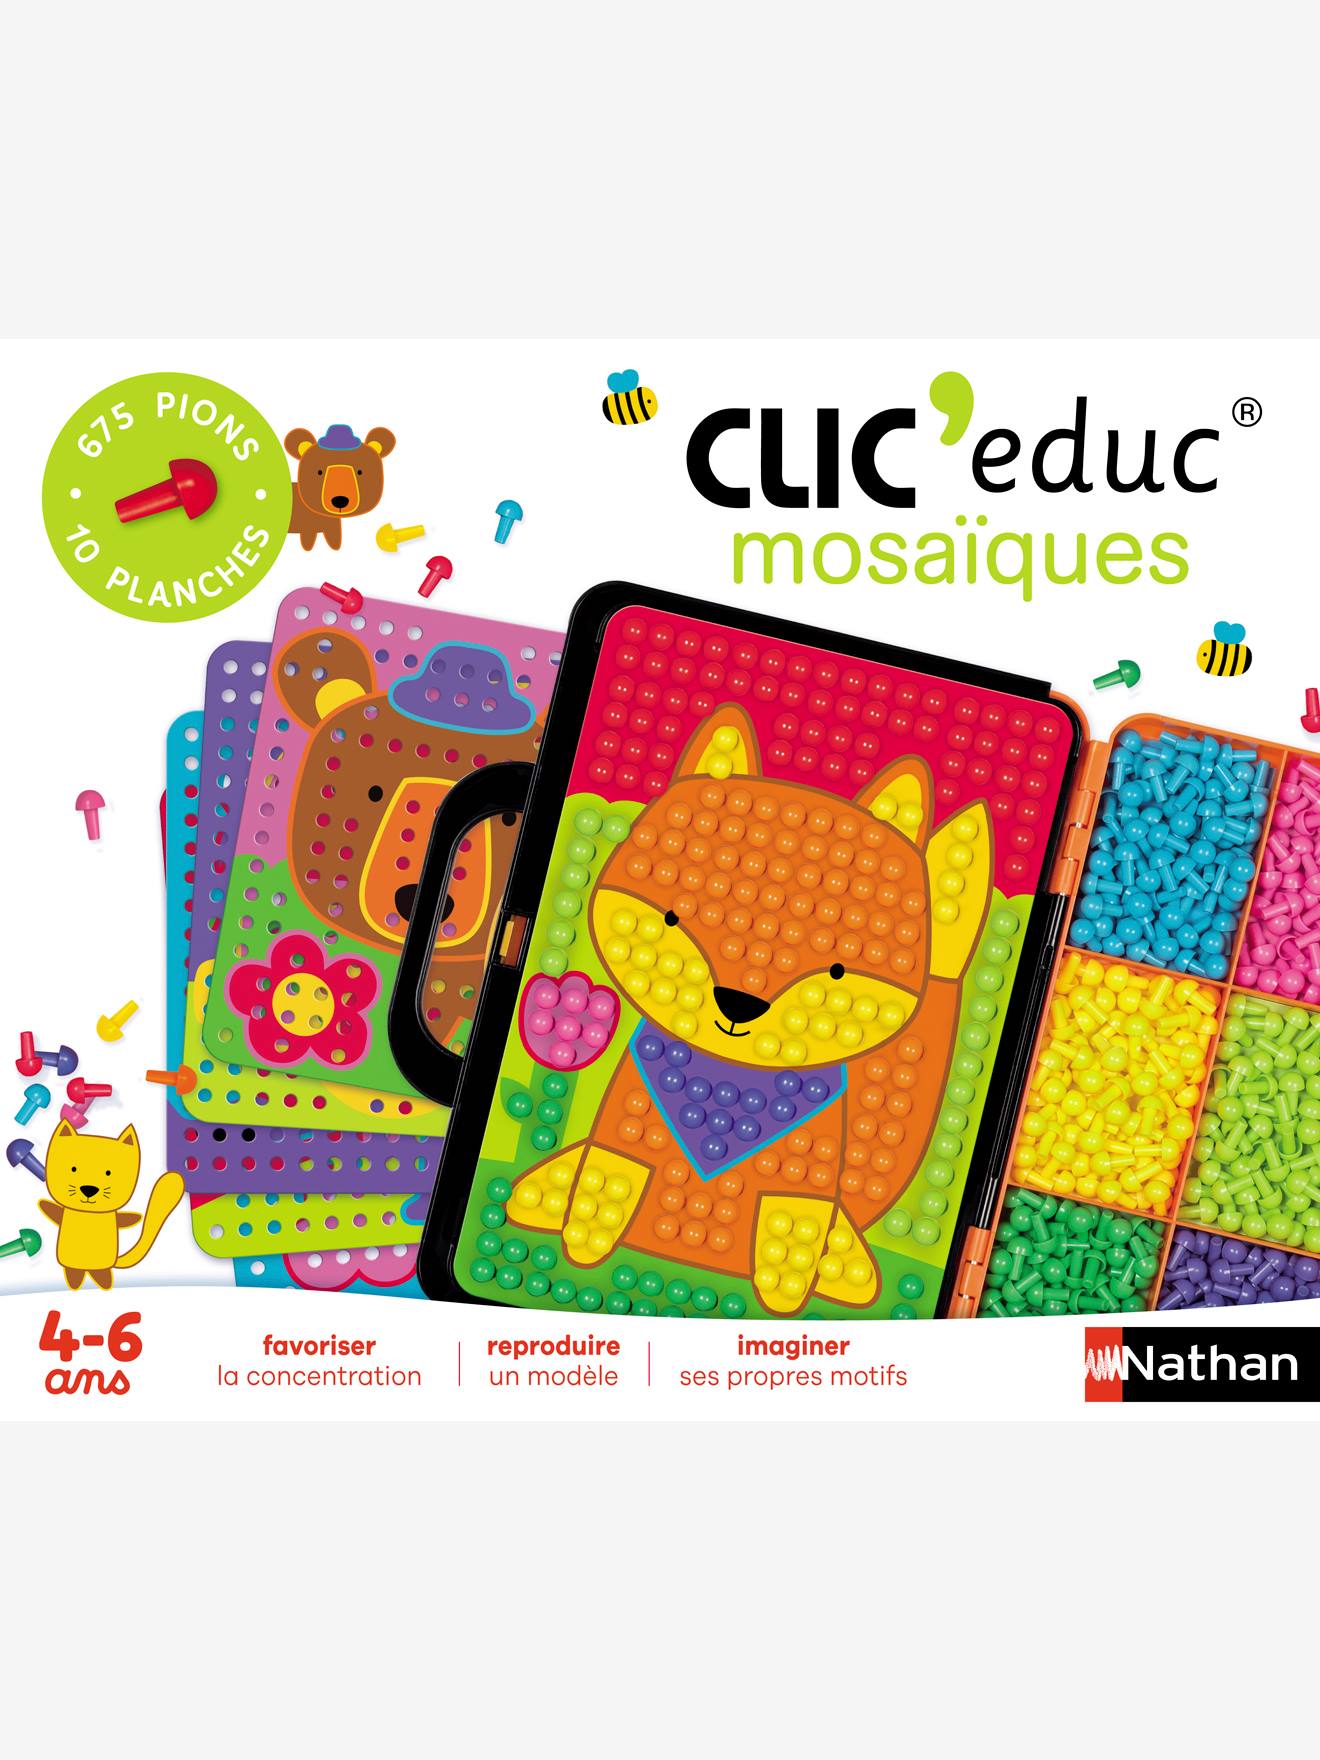 Clic Educ Mosaique - Jeux éducatifs